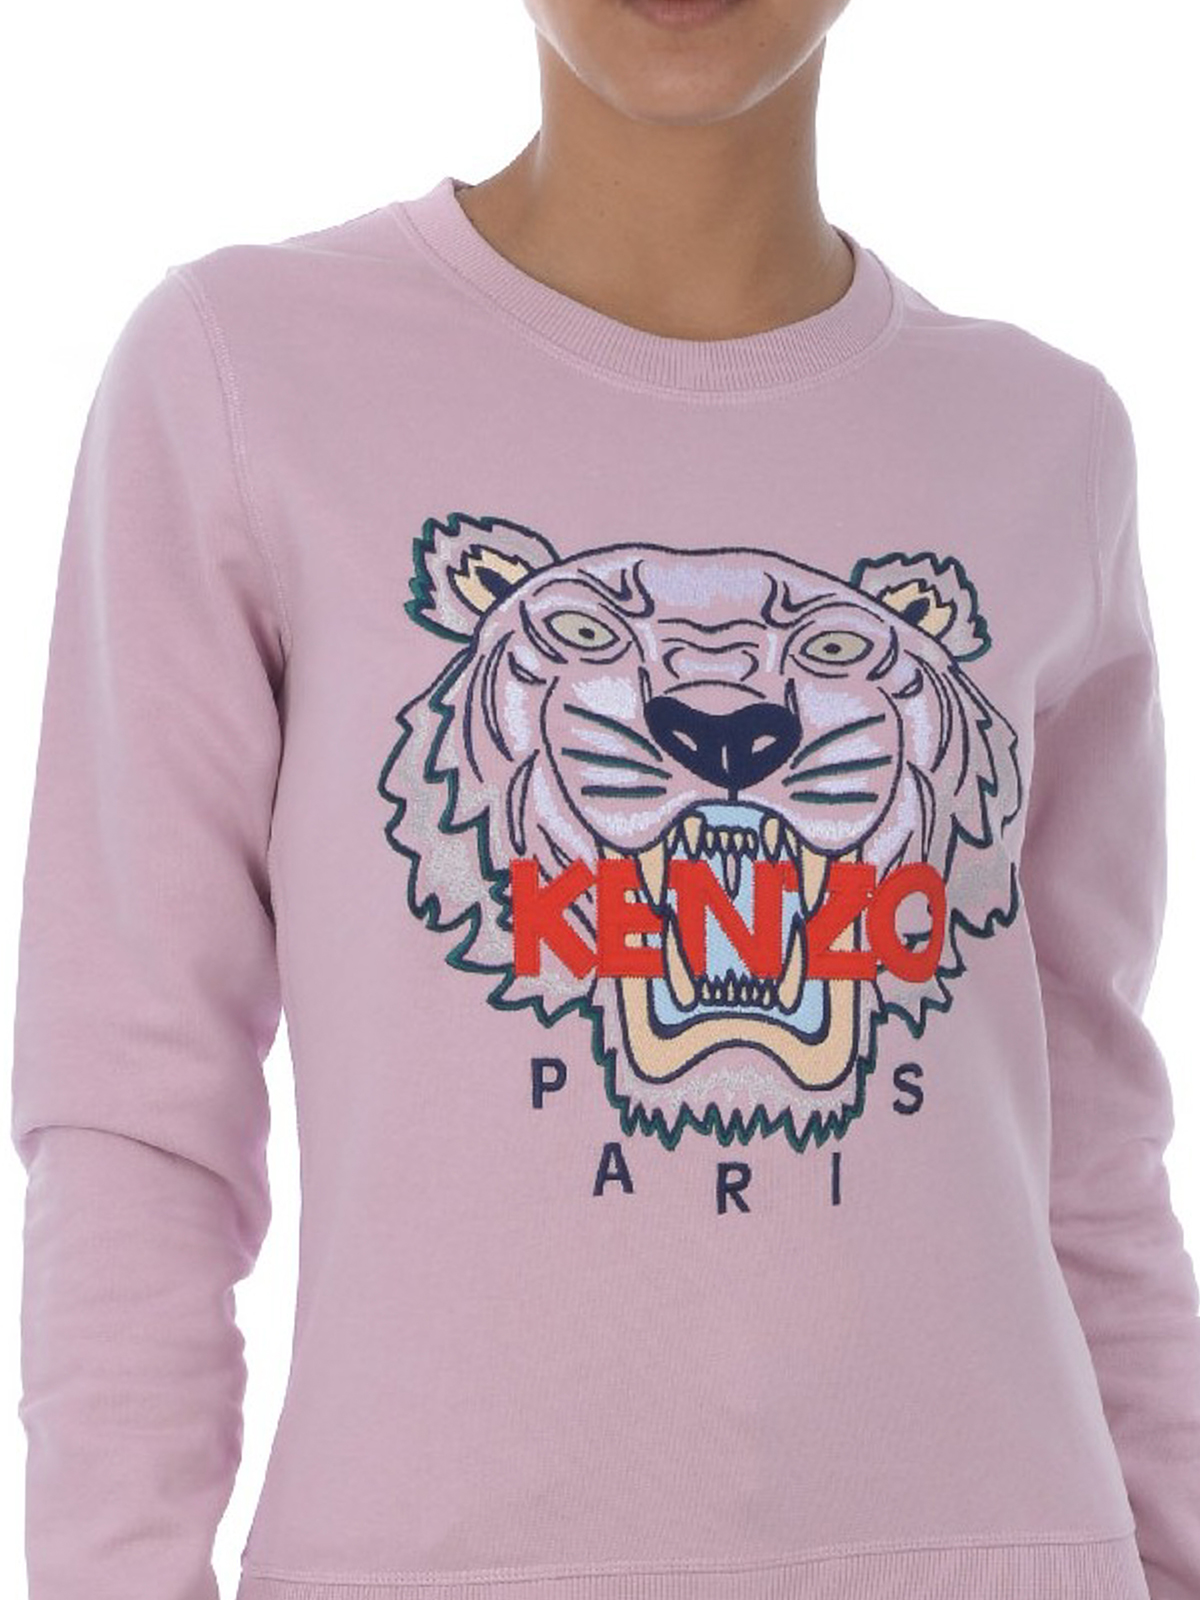 pink kenzo sweatshirt